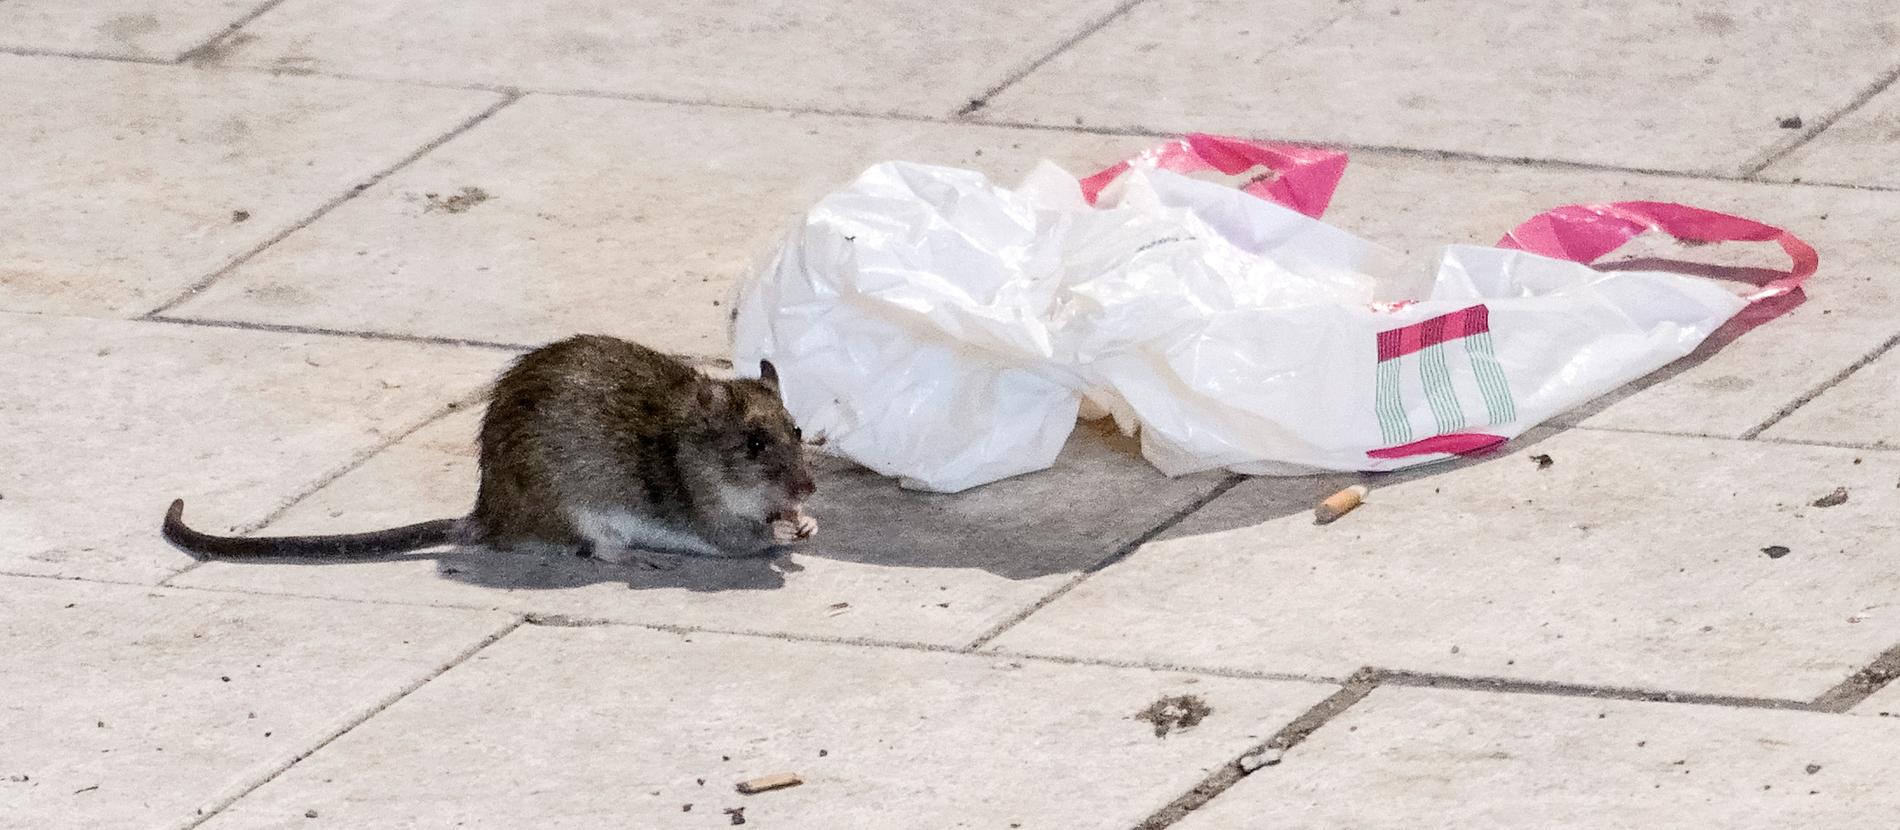 Antalet råttsaneringar har ökat under pandemin. På bilden en råtta på Sergels torg i Stockholm för några år sedan. Stockholm.